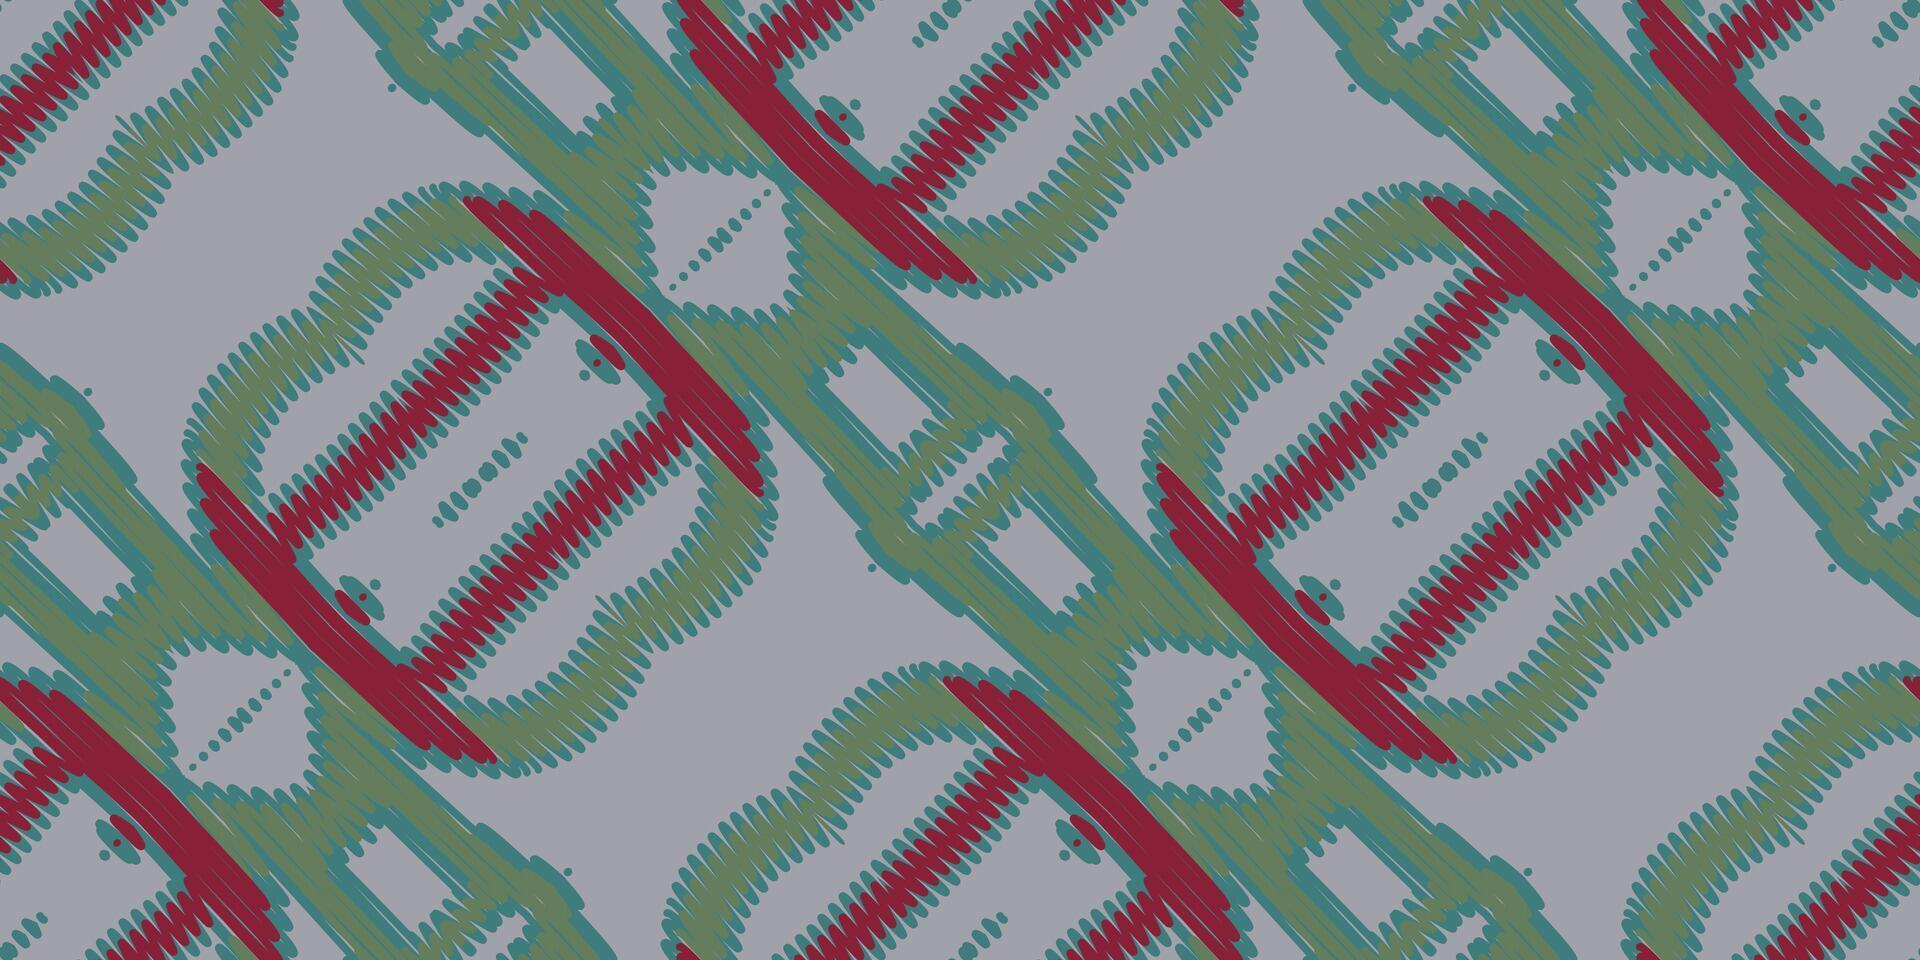 Ikat Blumen- Paisley Stickerei auf Weiß hintergrund.ikat ethnisch orientalisch Muster traditionell.aztekisch Stil abstrakt Vektor illustration.design zum Textur, Stoff, Kleidung, Verpackung, Dekoration, Schal, Teppich